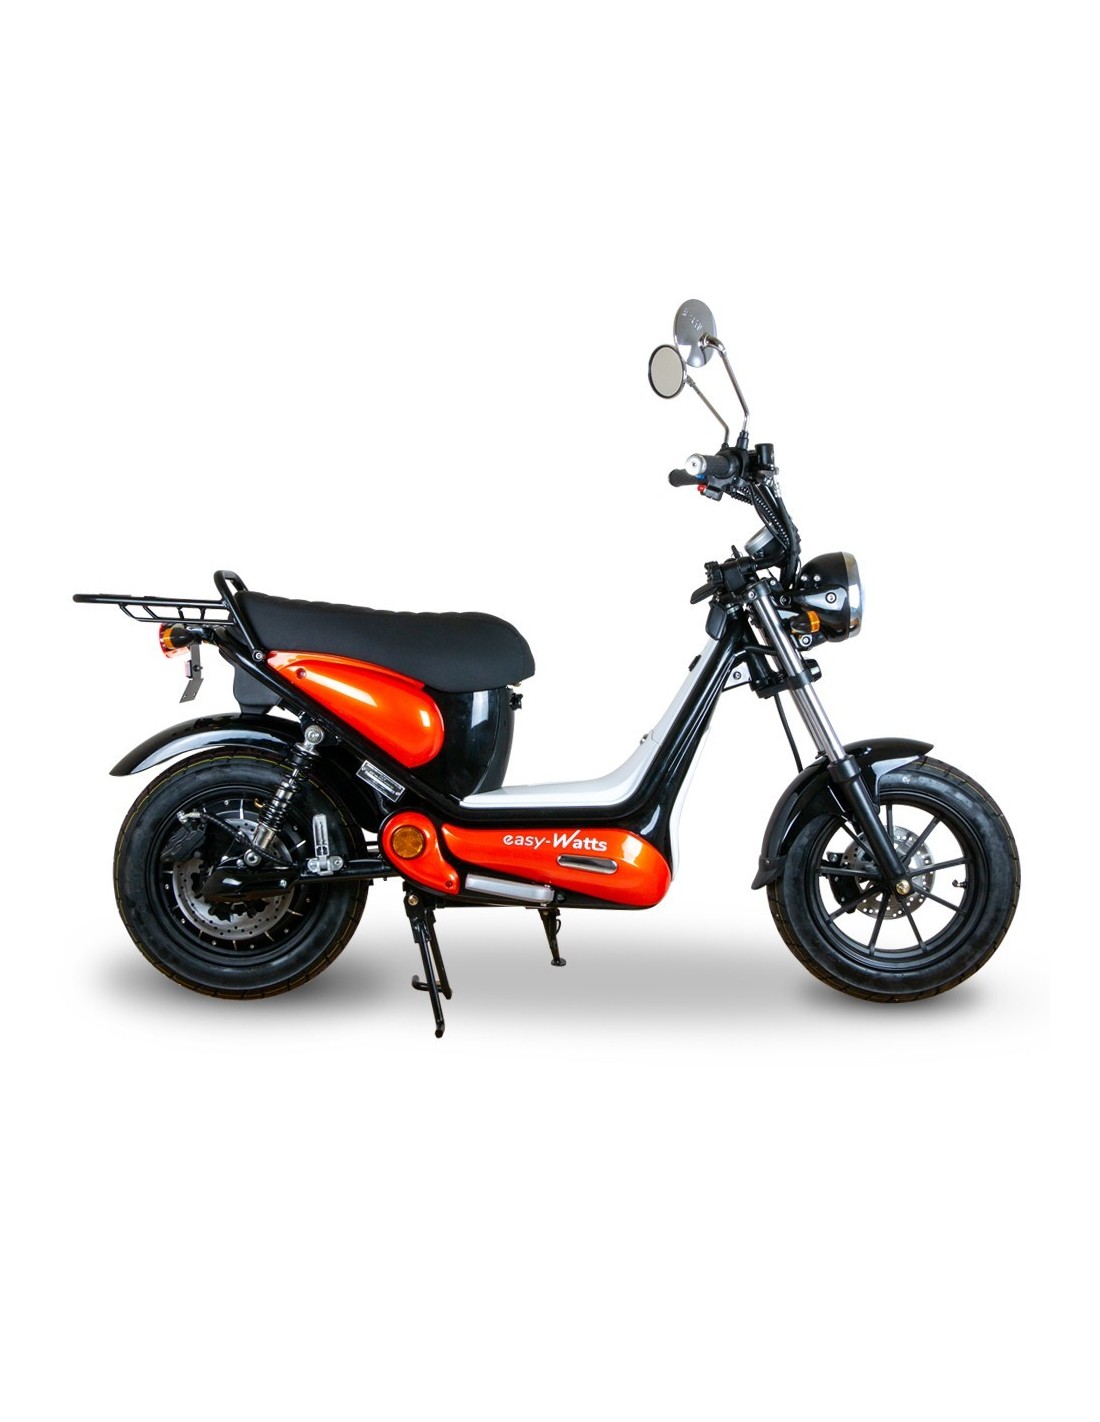 Batterie moto et scooter pas chère - Batteries moto - Feu Vert